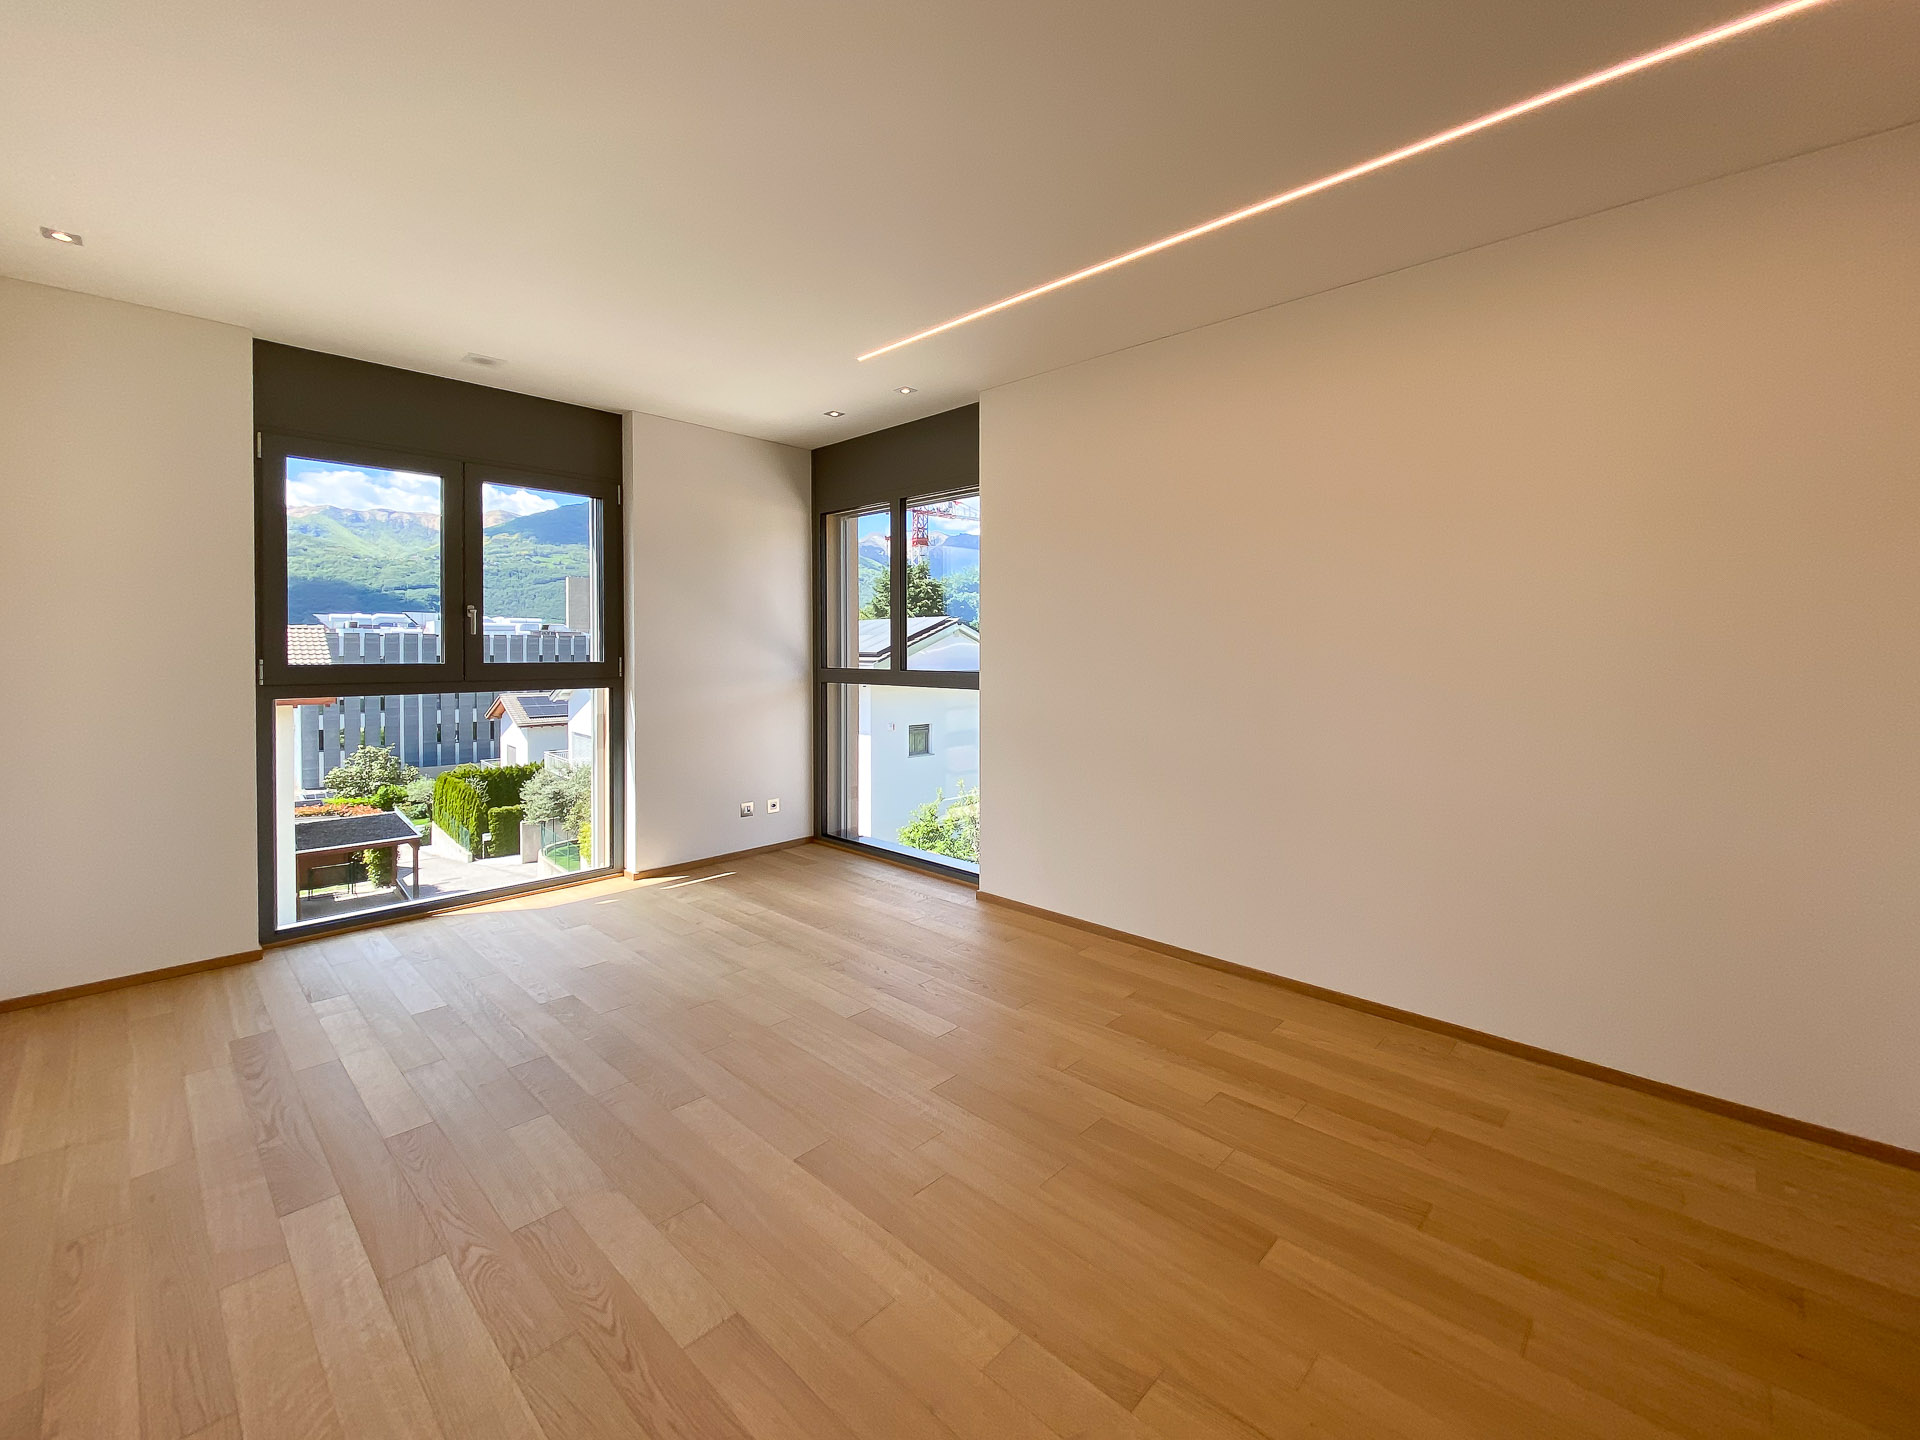 Moderno appartamento 3.5 locali in vendita in una residenza di nuova costruzione